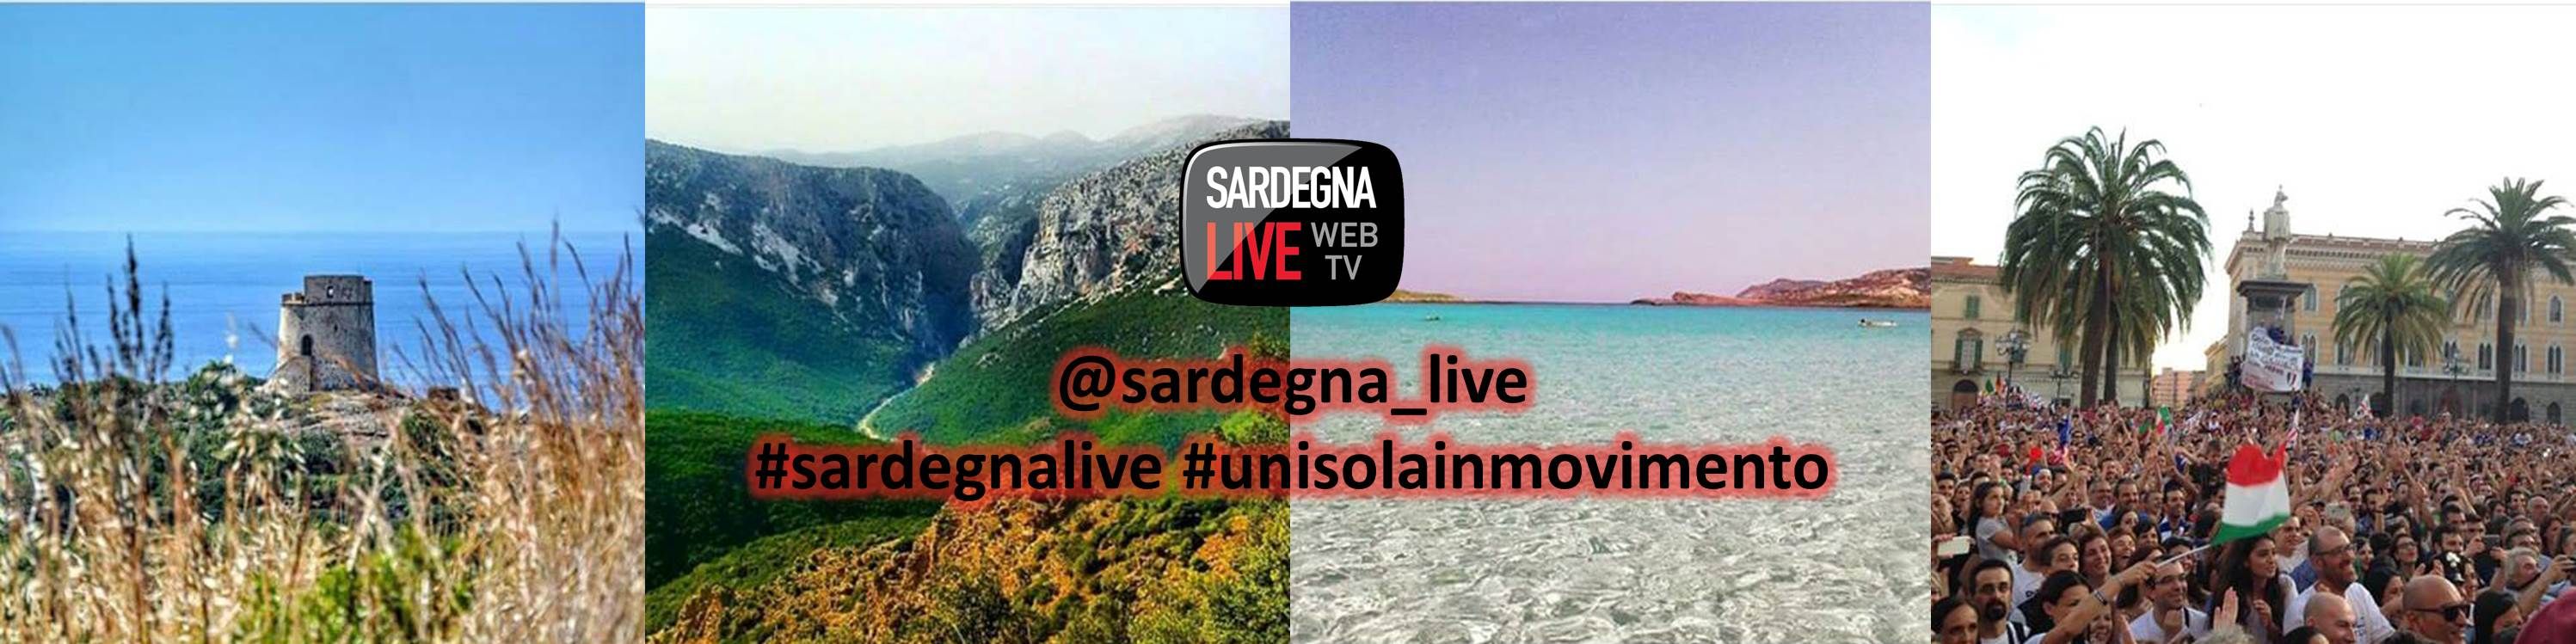 Selezione settimanale delle migliori foto dal profilo Instagram di @sardegna_live